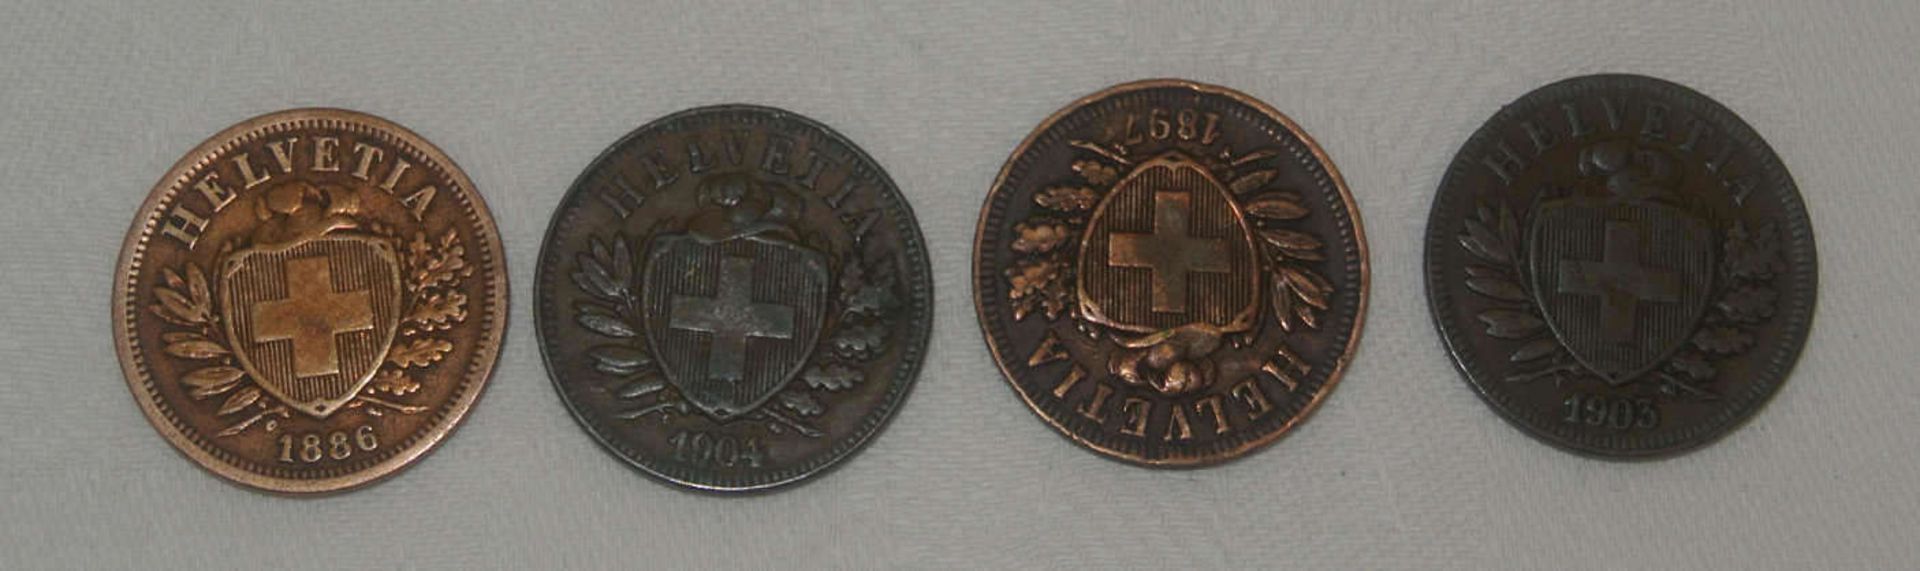 Lot von 2 Rappen - Stücken, dabei 1886 vz, 1904ss, 1897 ss+, 1903 ss. Besichtigung empfohlen. - Image 2 of 2